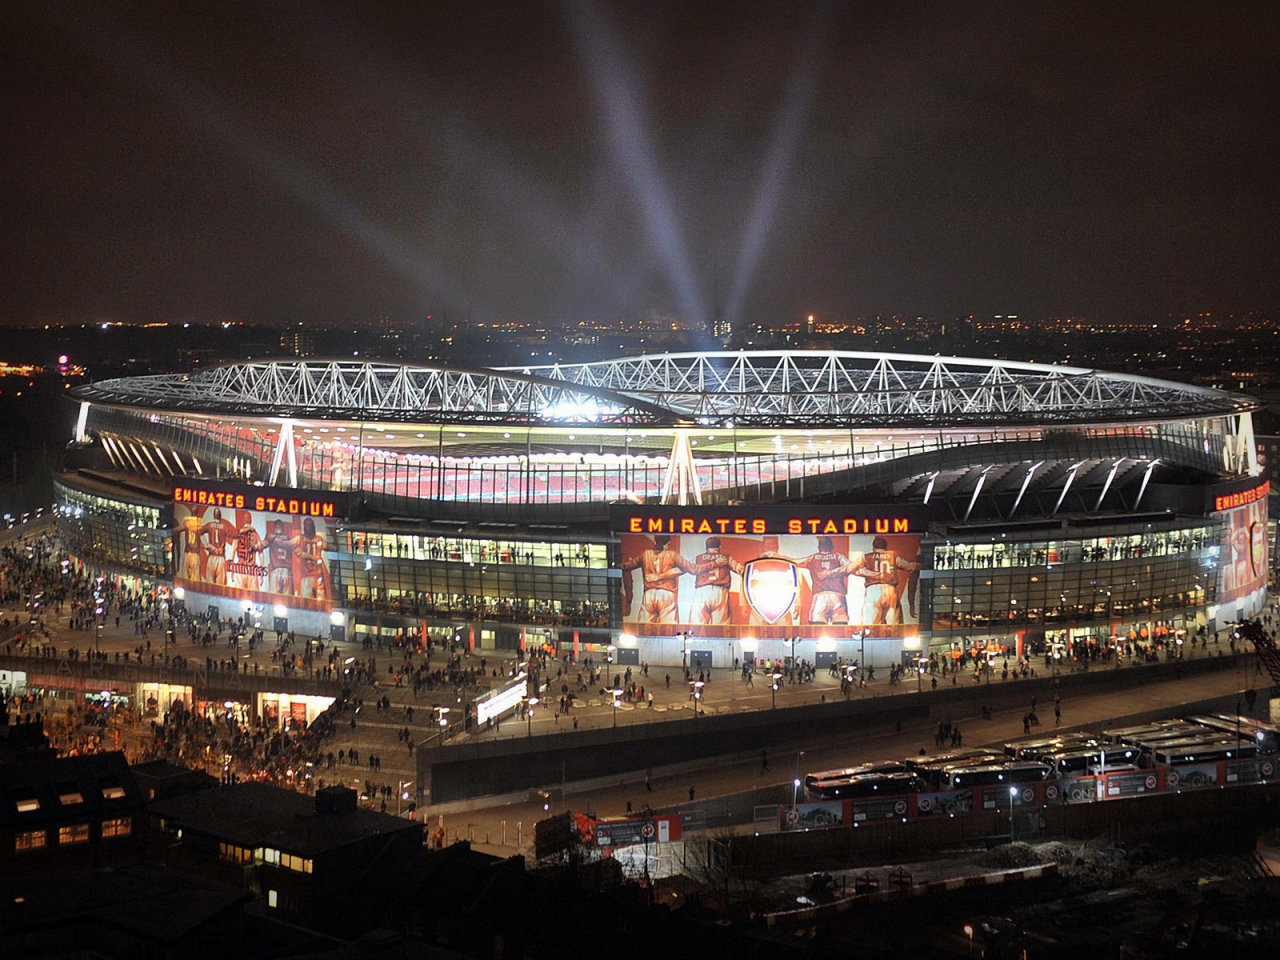 Emirates Stadium for 1280 x 960 resolution